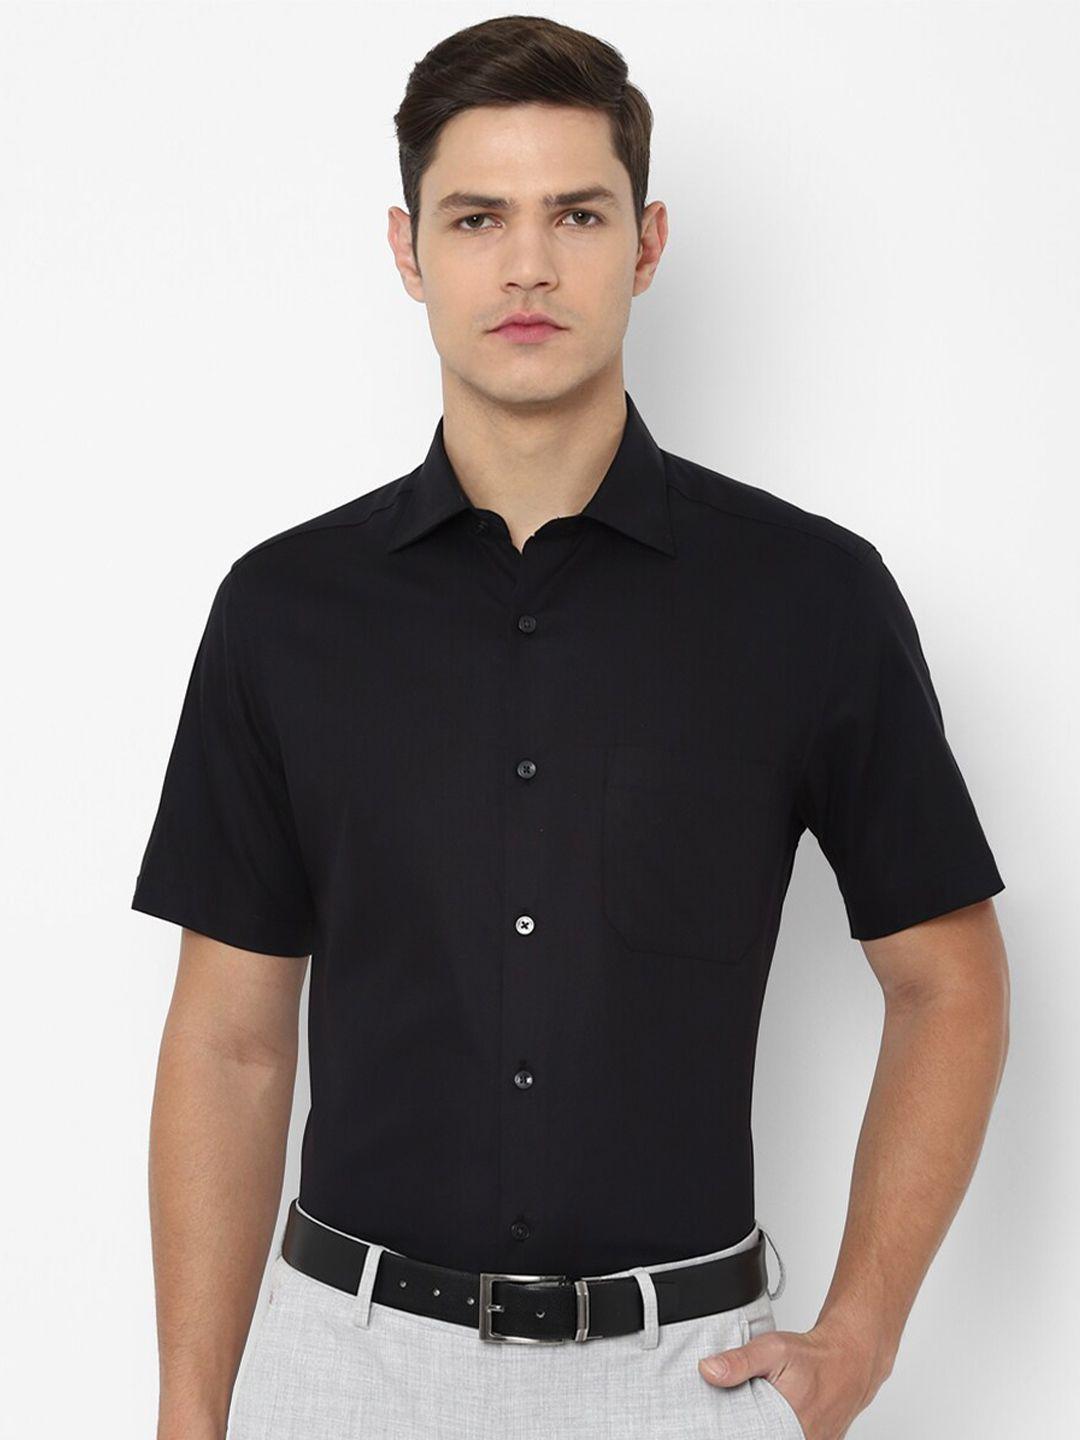 louis philippe men black pure cotton formal shirt